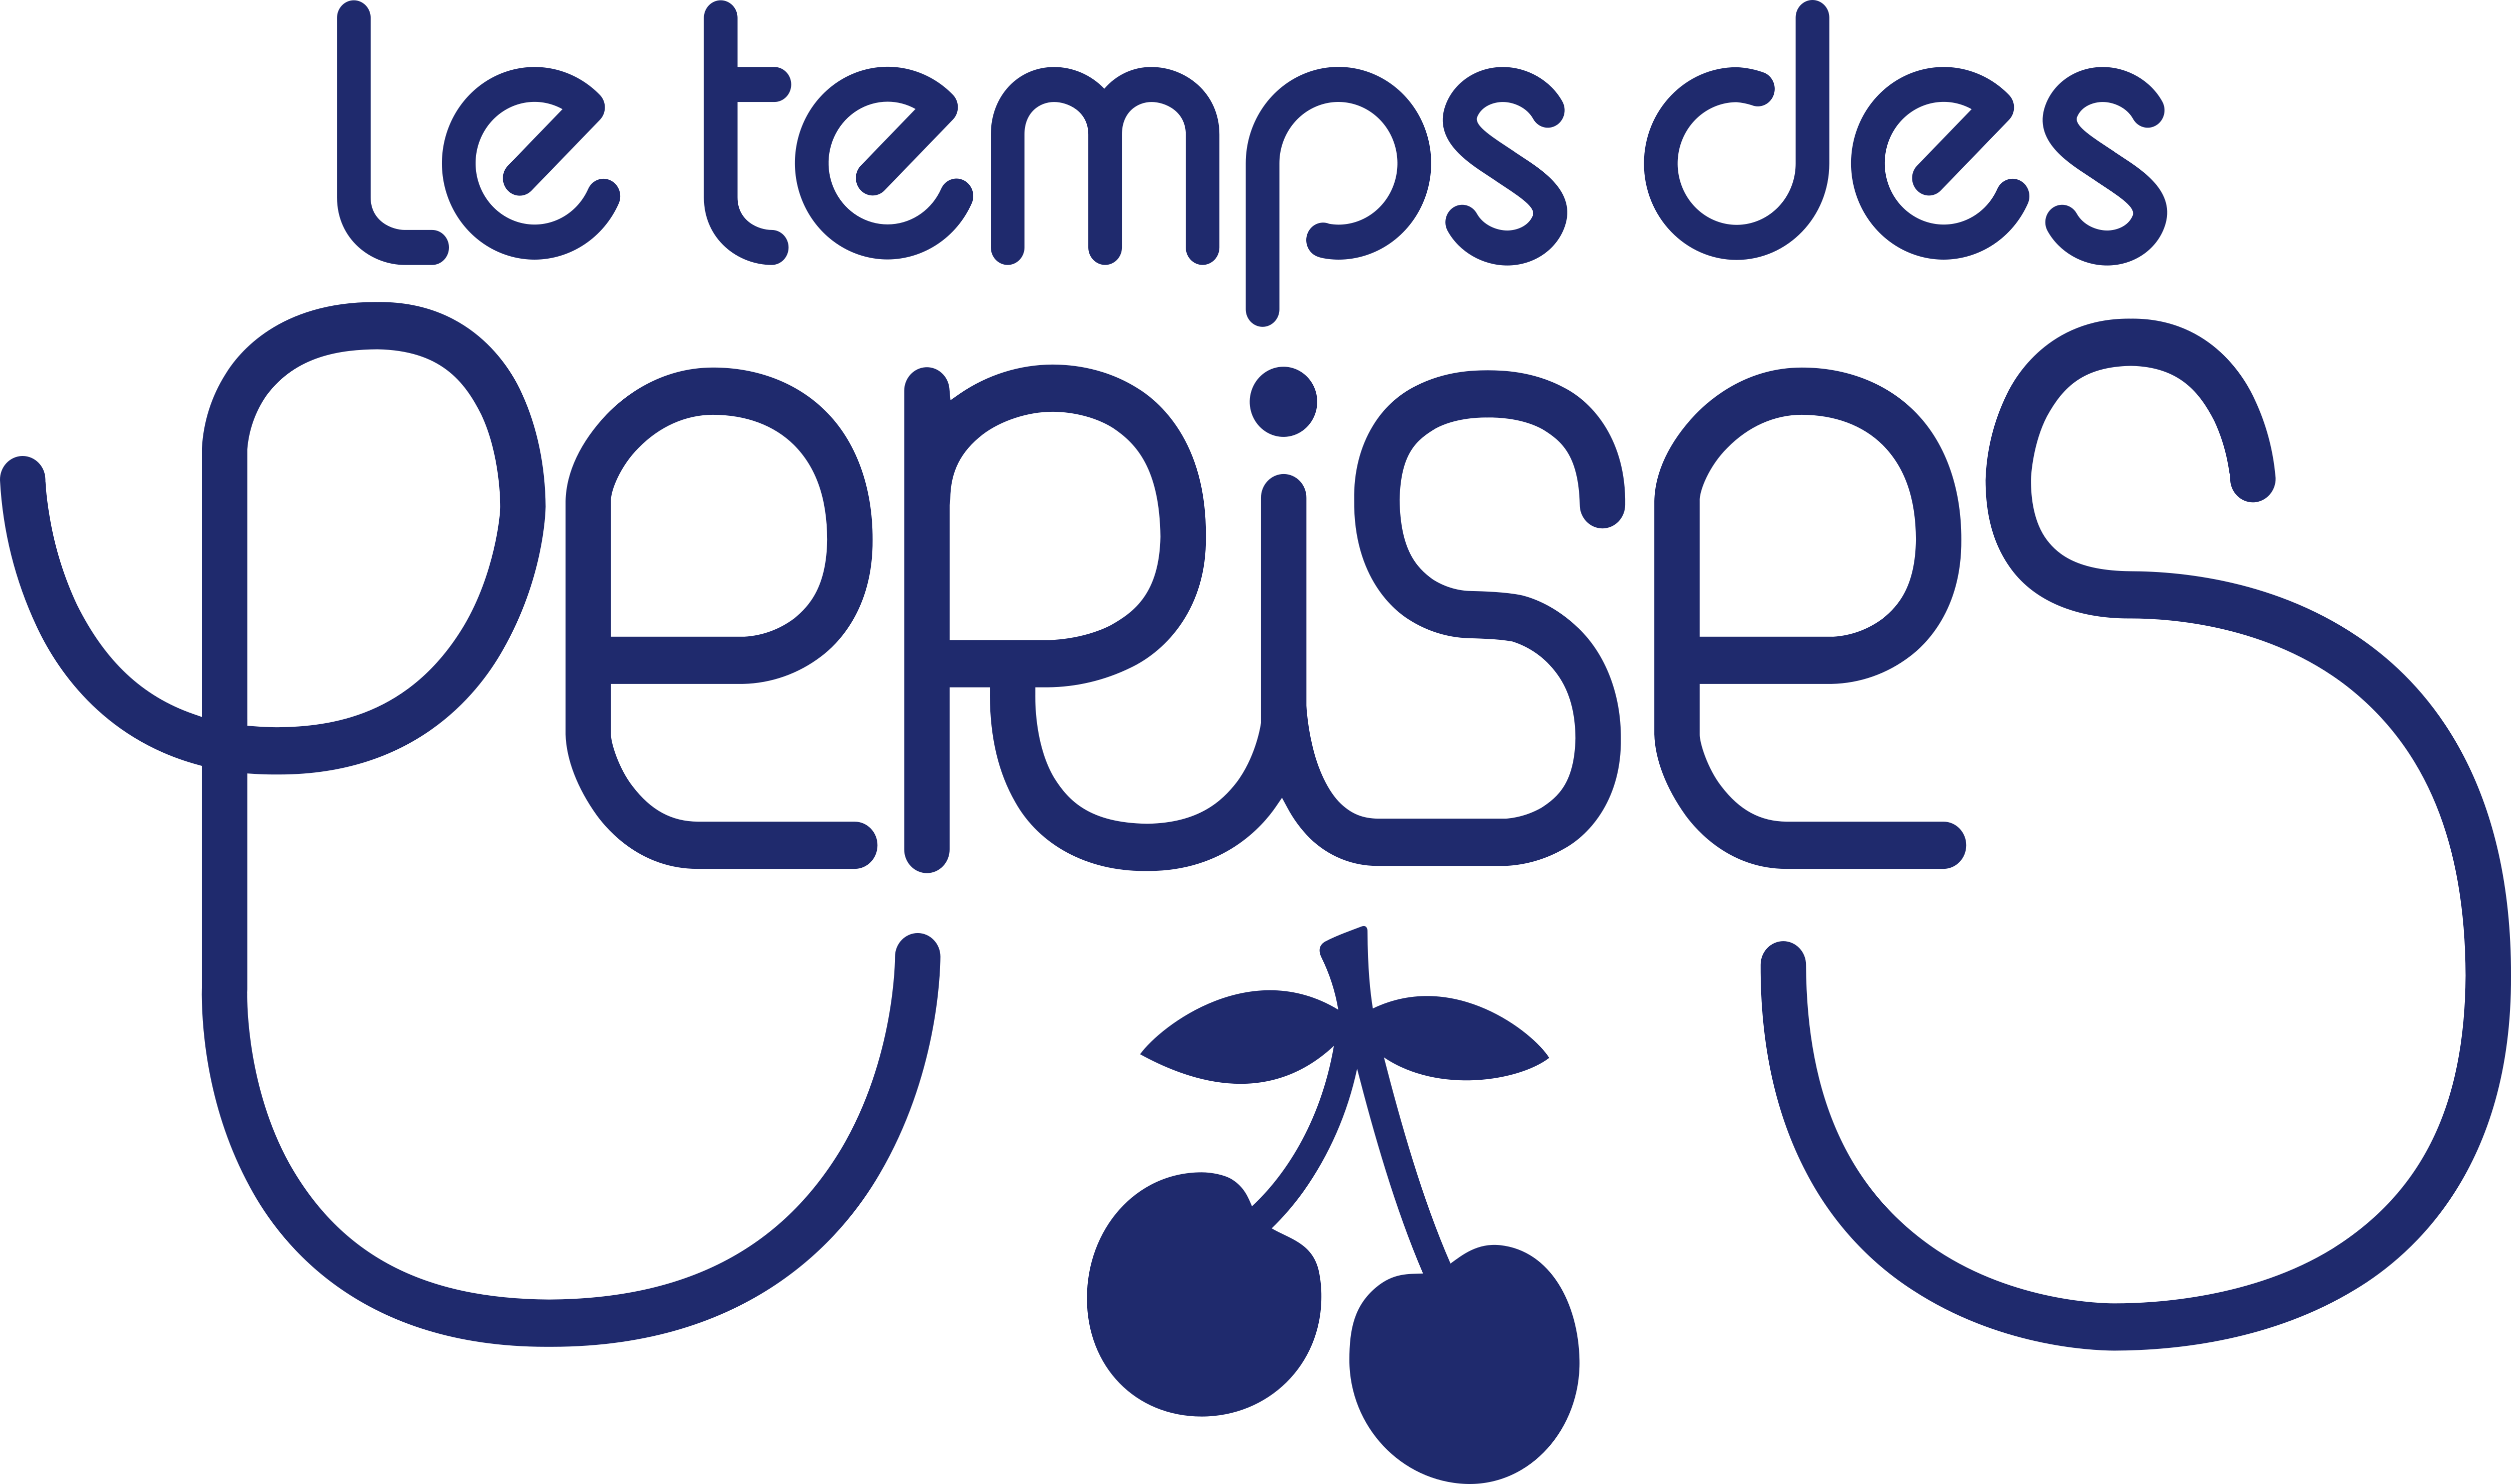 Le Temps des Perises одежда. Le Temps логотип. Le Temps des Cerises сумка. Le Temps Cerises кофе. Tout le temps